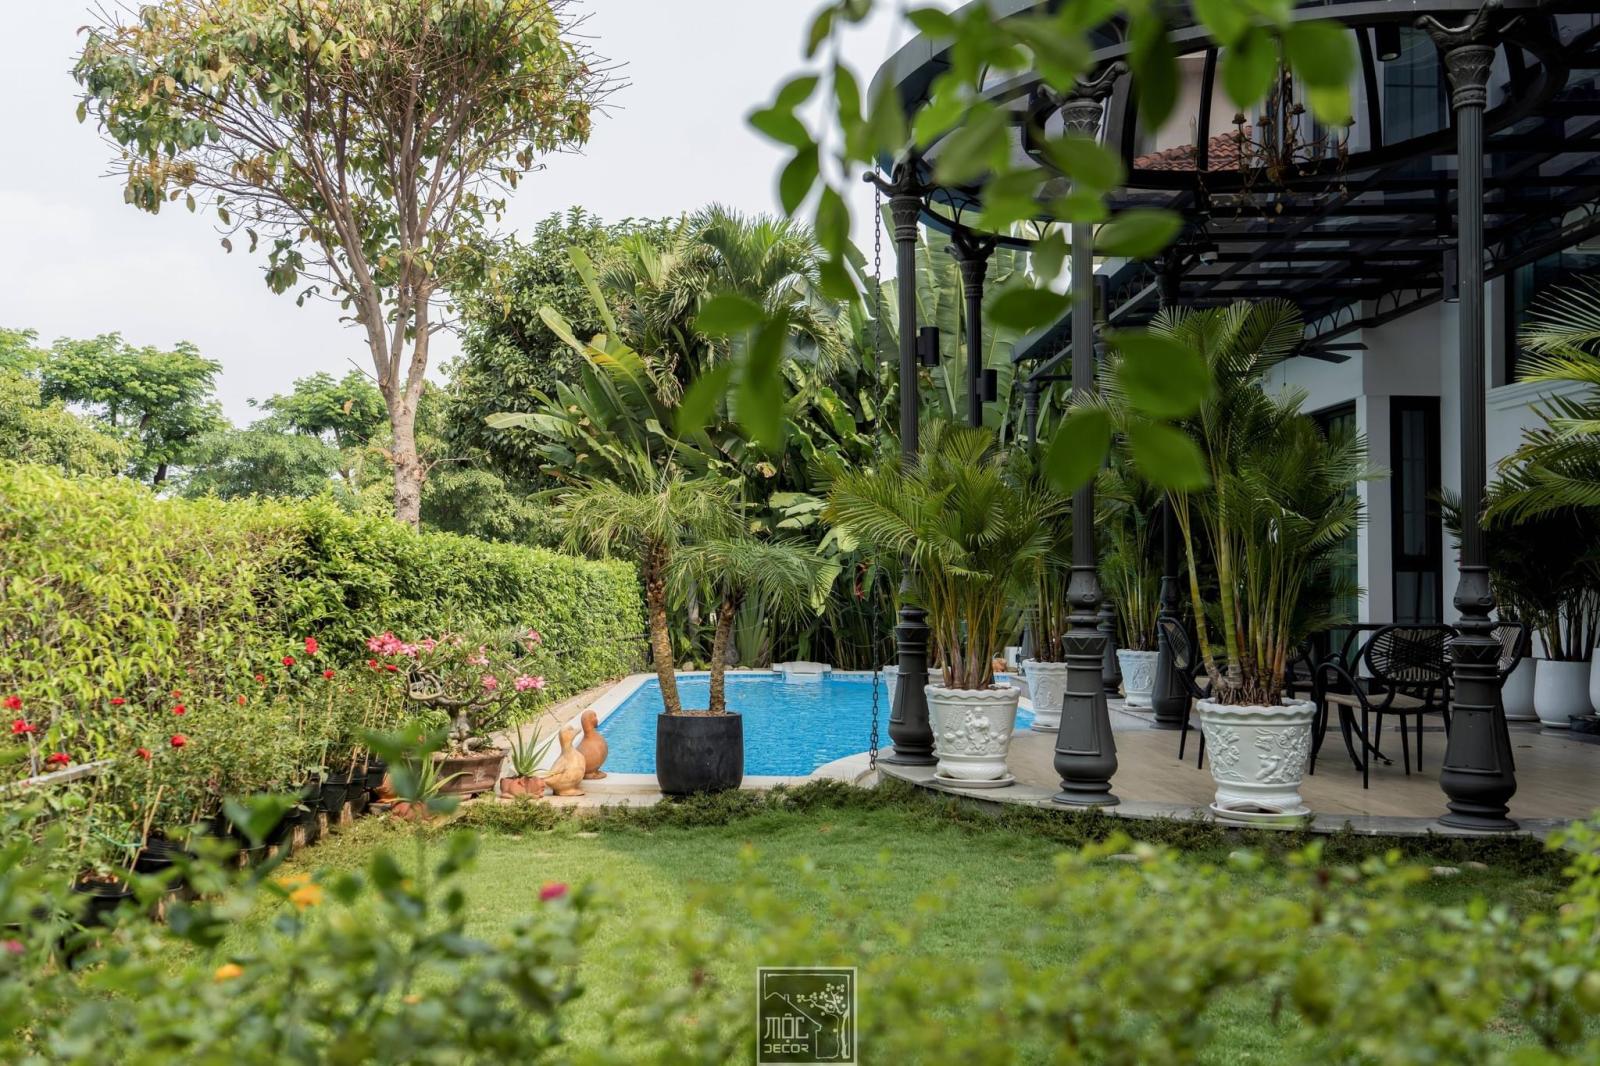 Bán Biệt thự nhà đẹp nhất khu Vip Chateau Phú Mỹ Hưng, Quận 7. Đất 600m2 nhà có hồ bơi, giá 195 tỷ sổ hồng